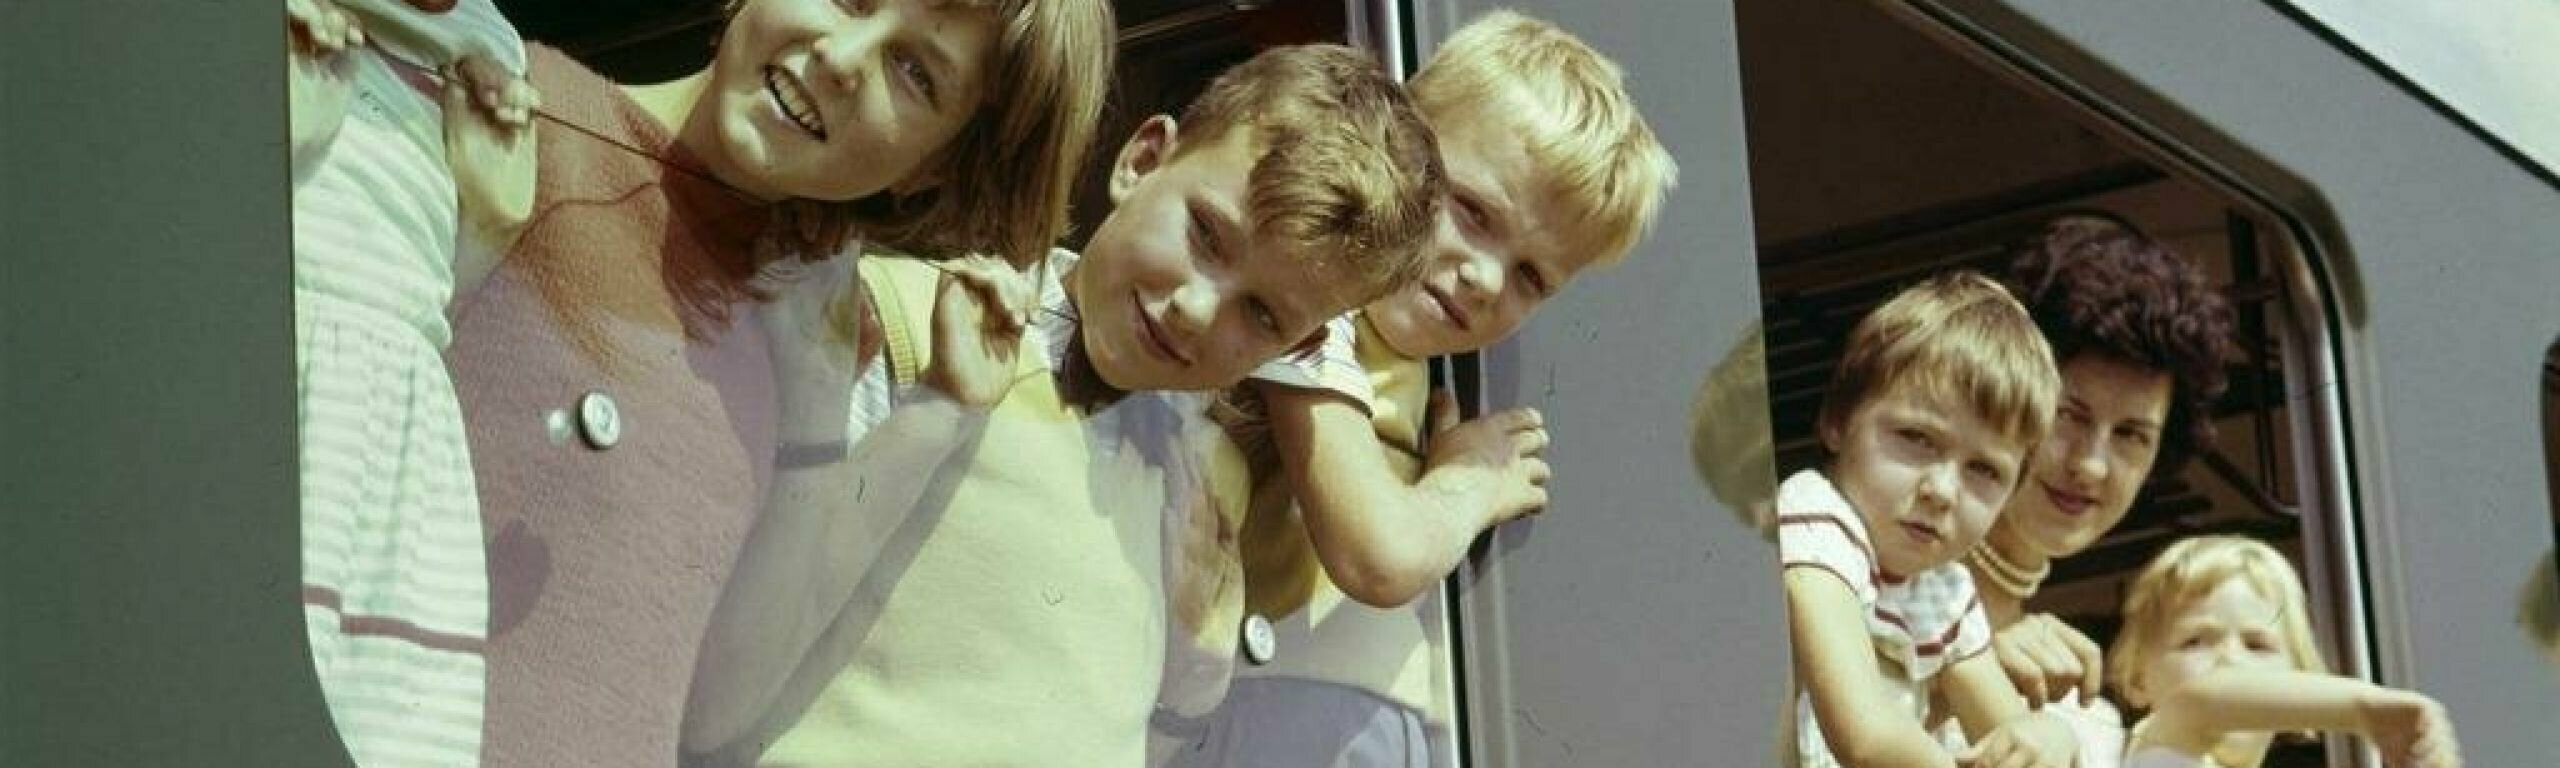 Des enfants regardent par la fenêtre d'un train